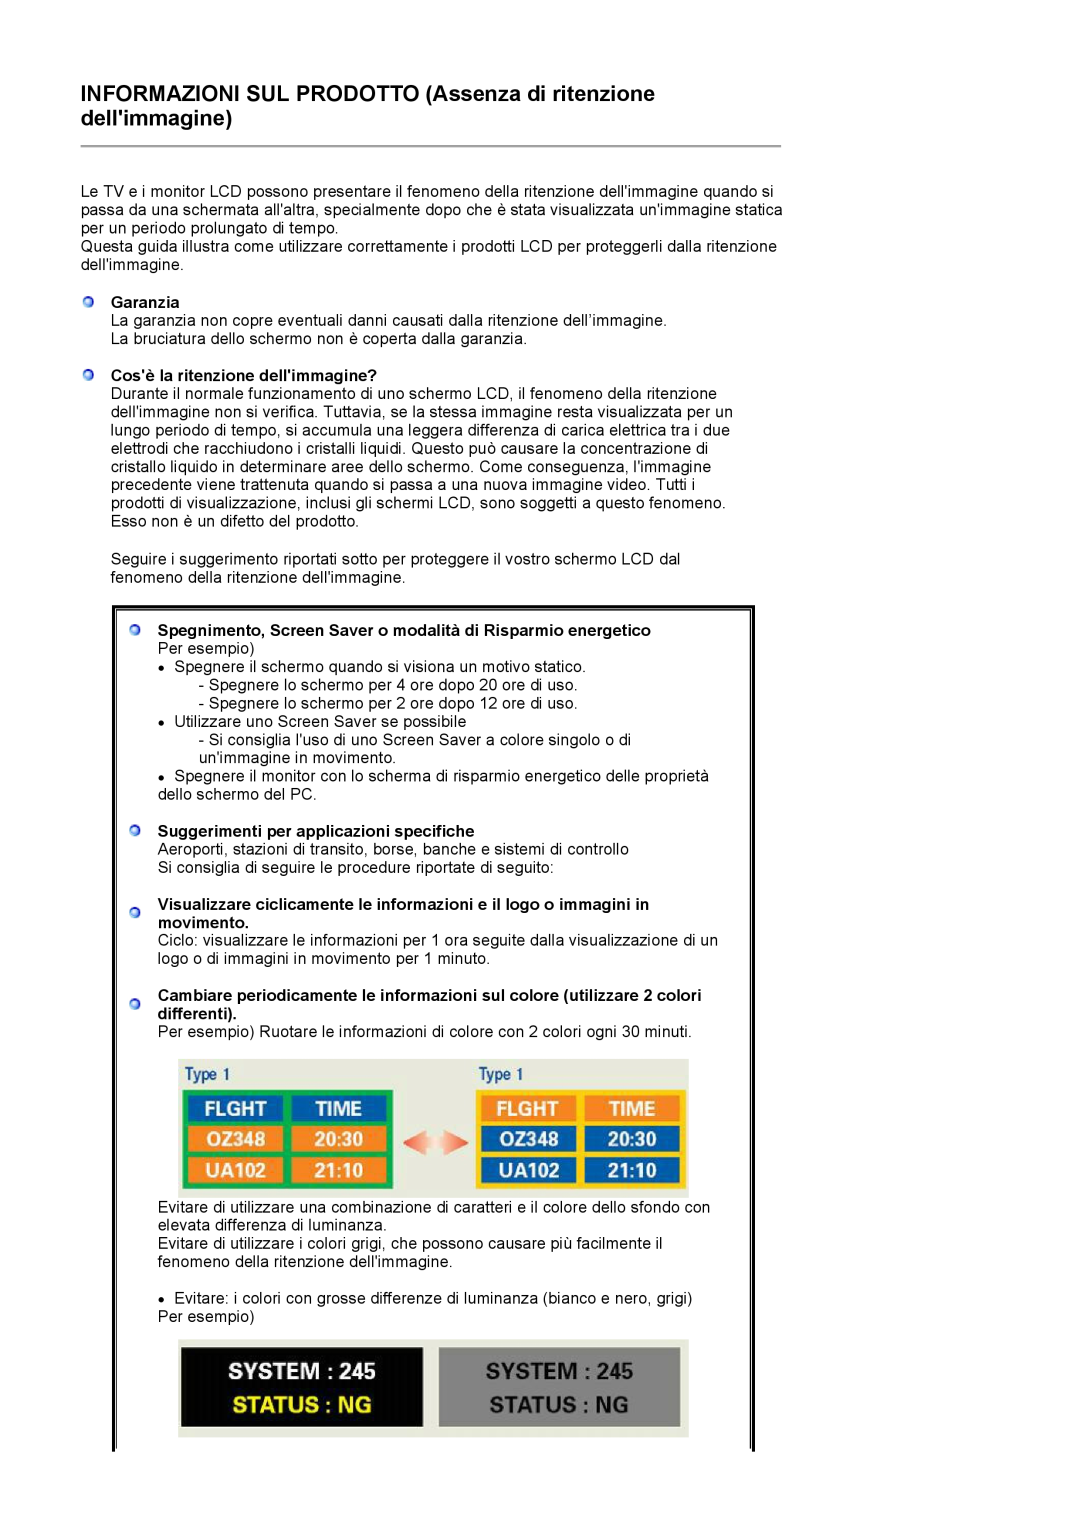 Samsung LS17PENSF/CLT manual Garanzia, Cosè la ritenzione dellimmagine?, Suggerimenti per applicazioni specifiche 